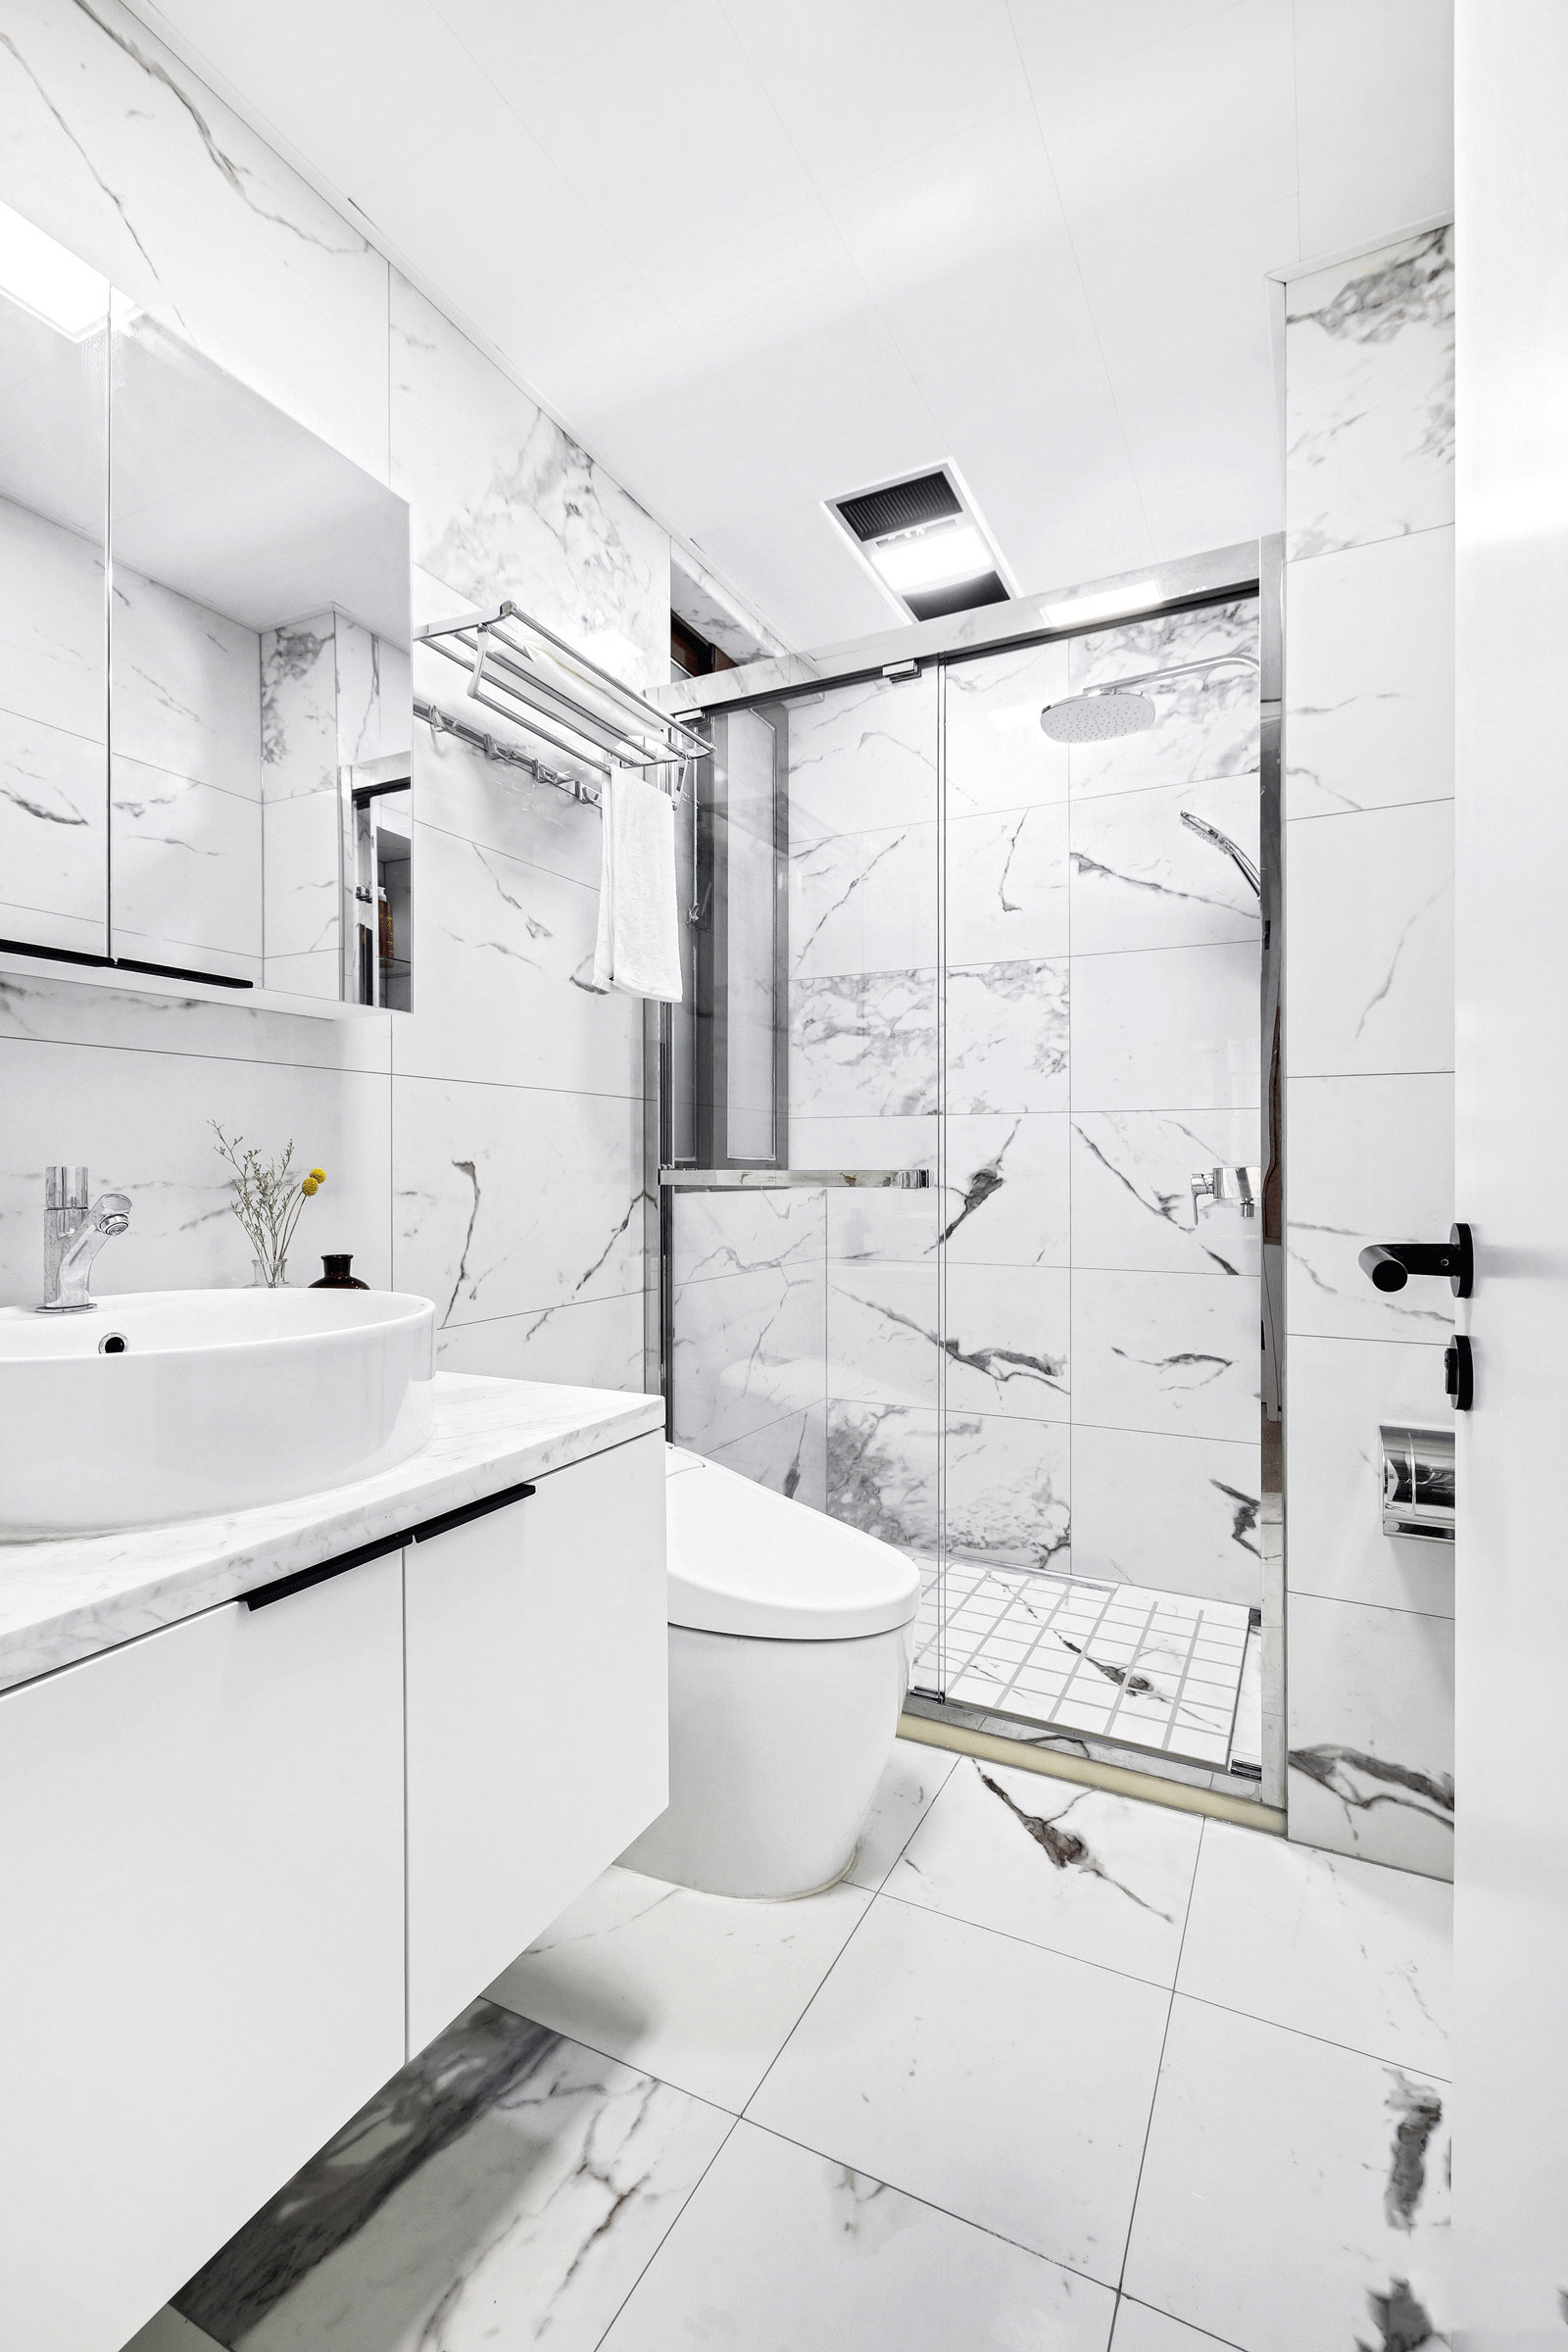 白色大理石丰盈了卫浴空间的质感，局部干湿分离设计，彰显了空间美学。